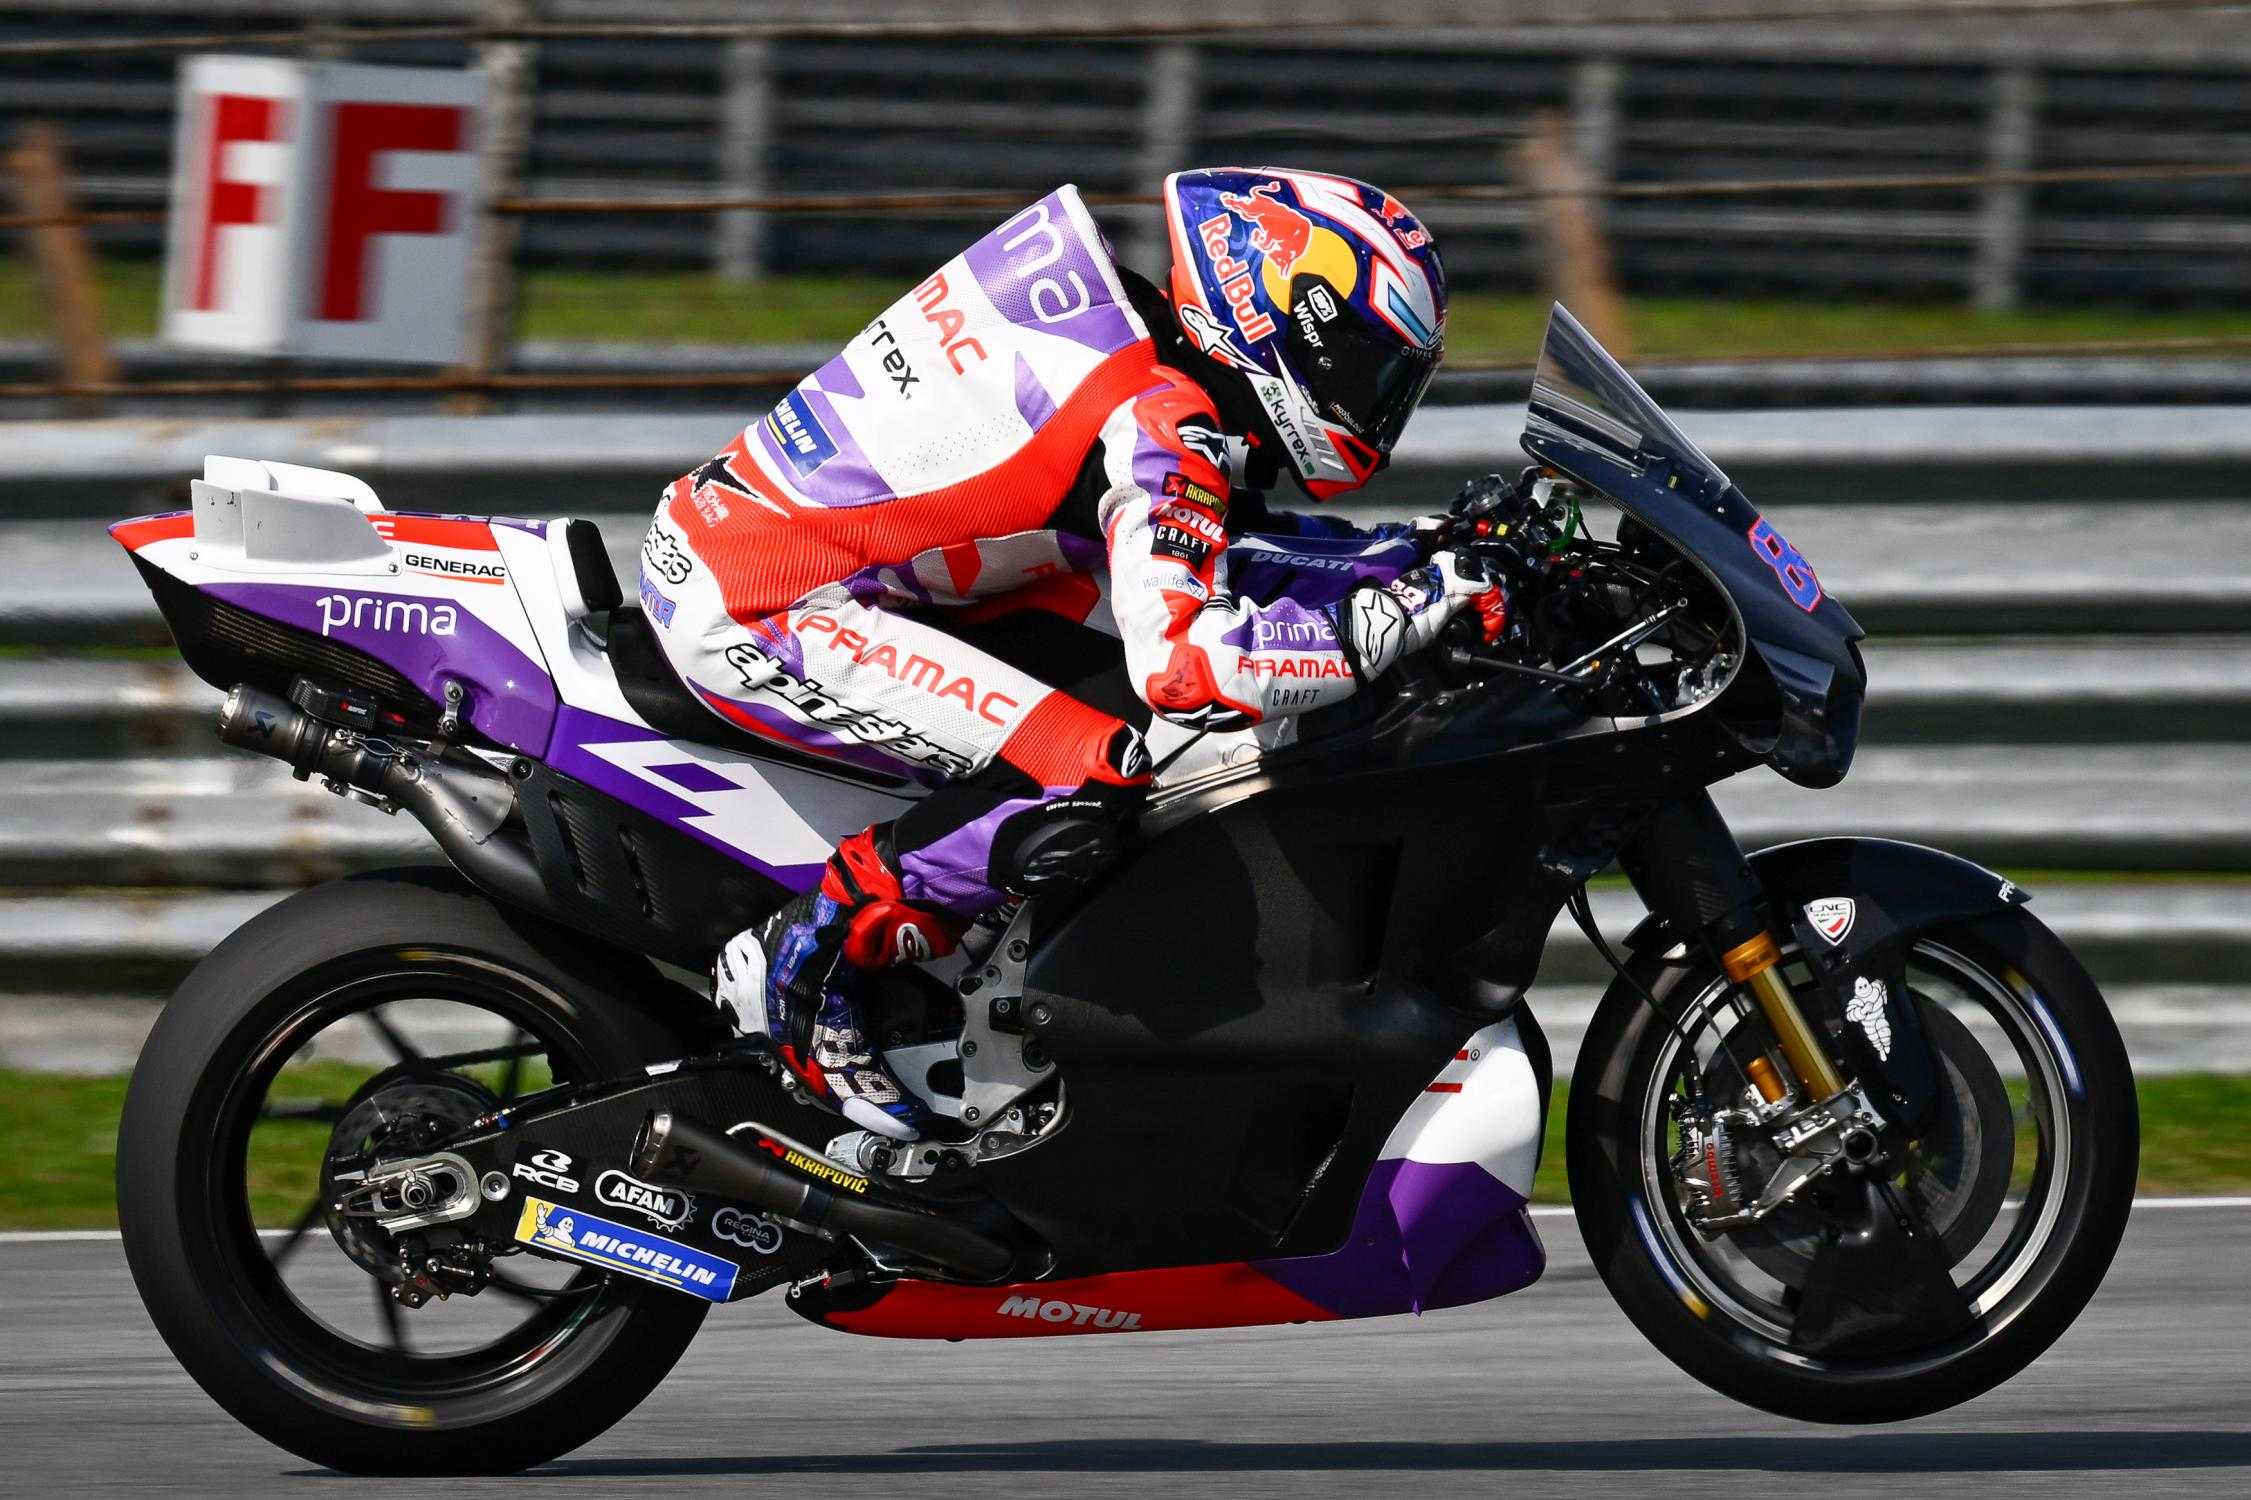 "Le moteur de la Ducati est plus rapide qu'en 2022", affirme Martin